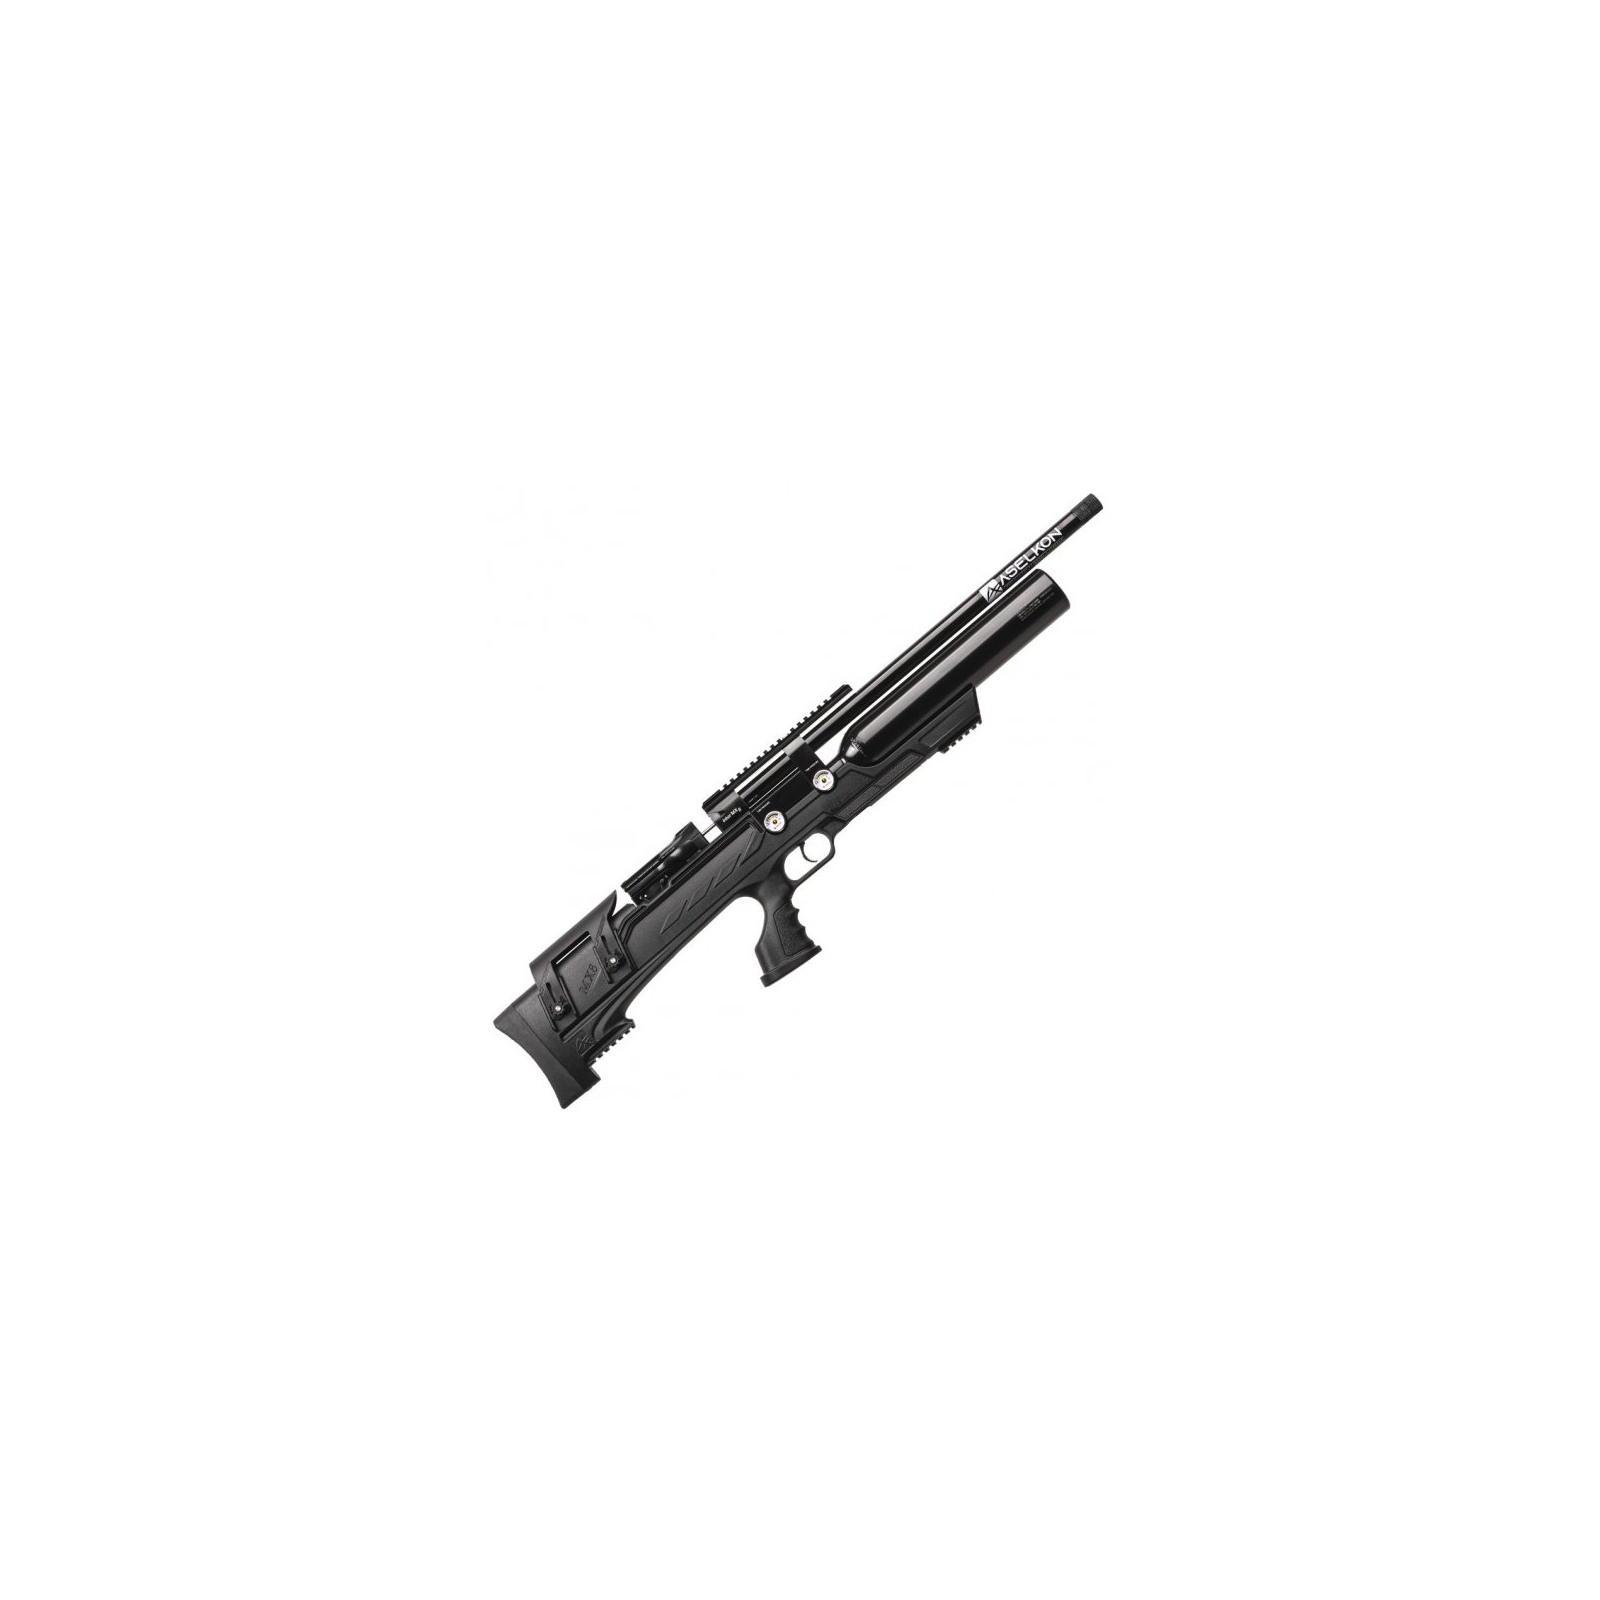 Пневматическая винтовка Aselkon MX8 Evoc Редукторна Black (1003768)